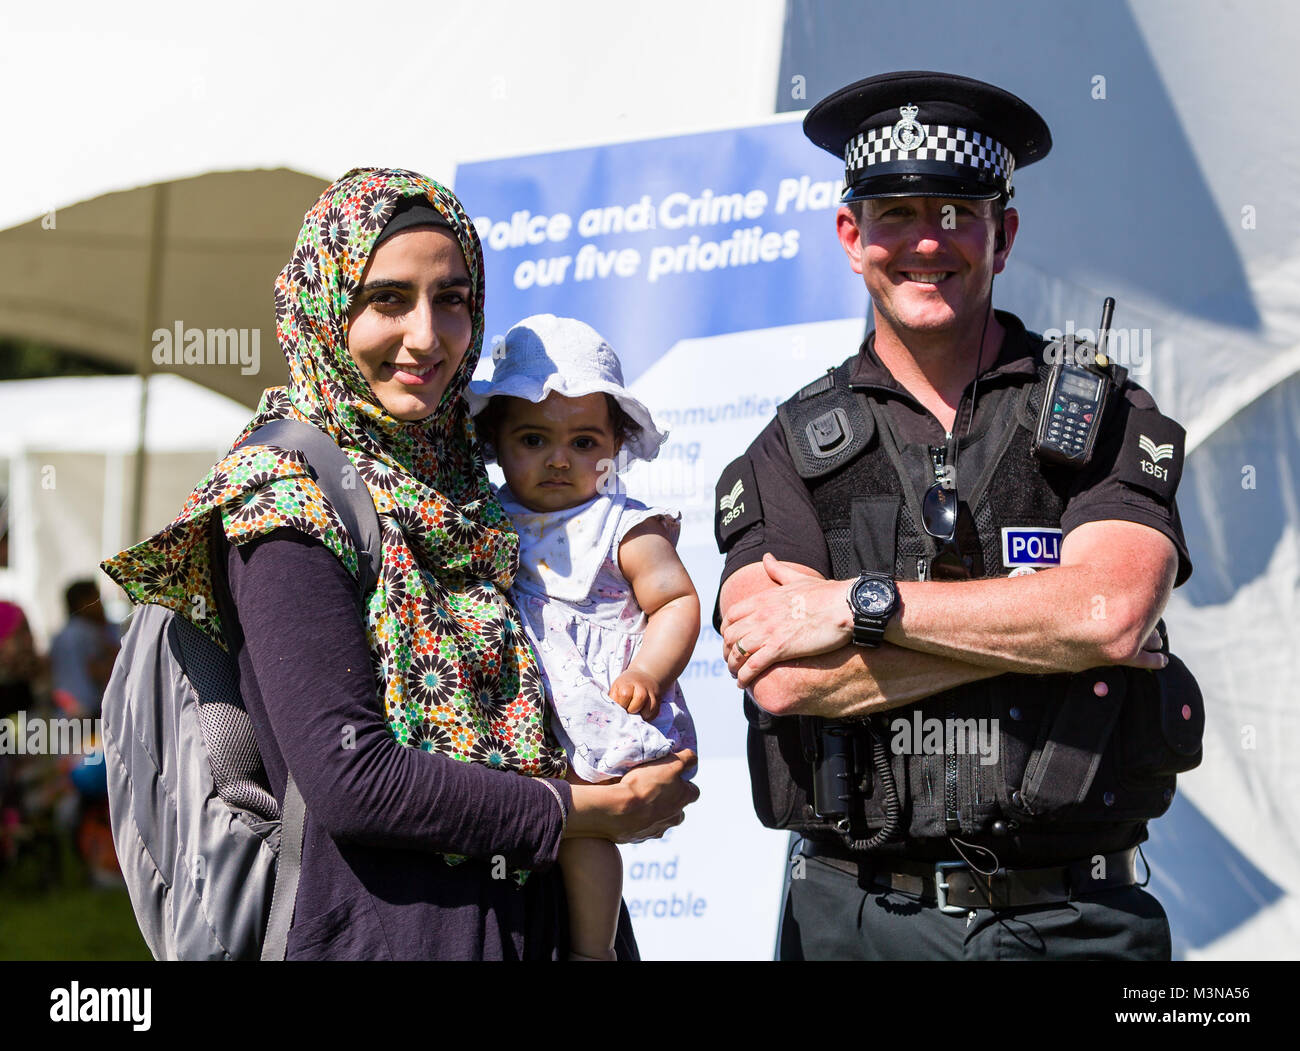 Un funzionario di polizia e una donna musulmana con un bambino di stare di fronte ad un crimine prevenzione banner. Foto Stock